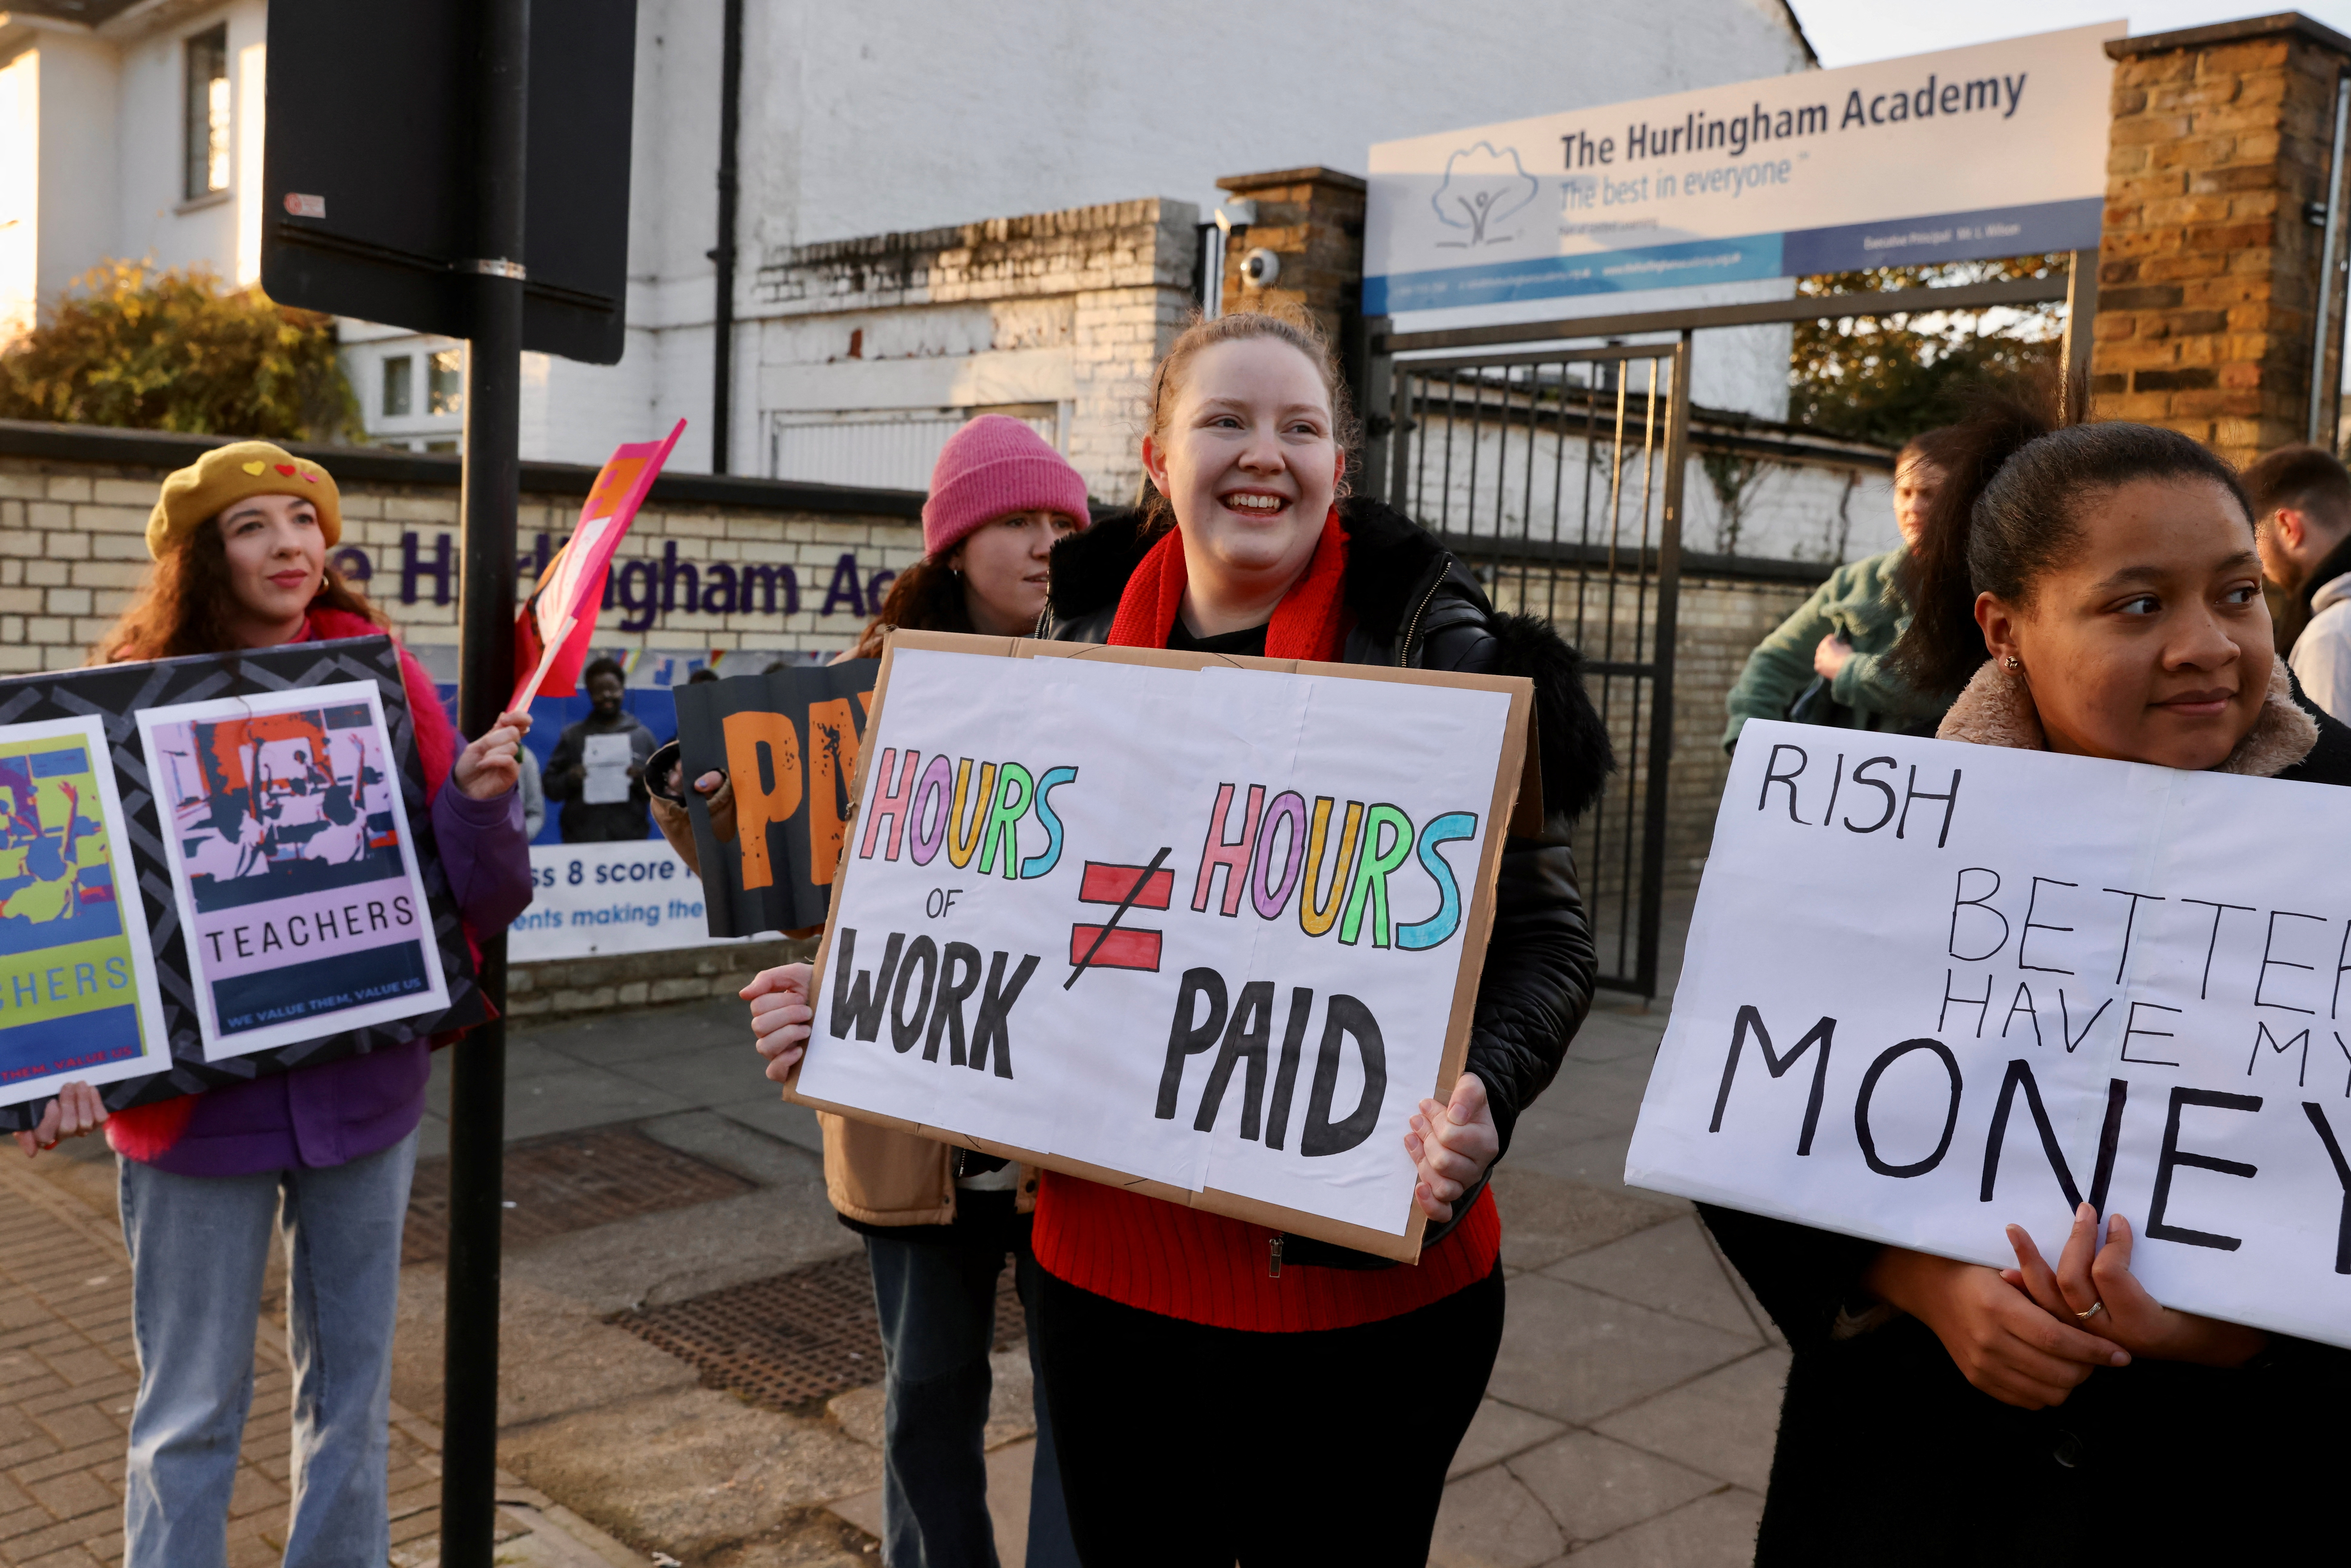 Profesores se unen a la huelga en un piquete en The Hurlingham Academy en Fulham, Londres, Gran Bretaña 1 de febrero de 2023. REUTERS/Kevin Coombs